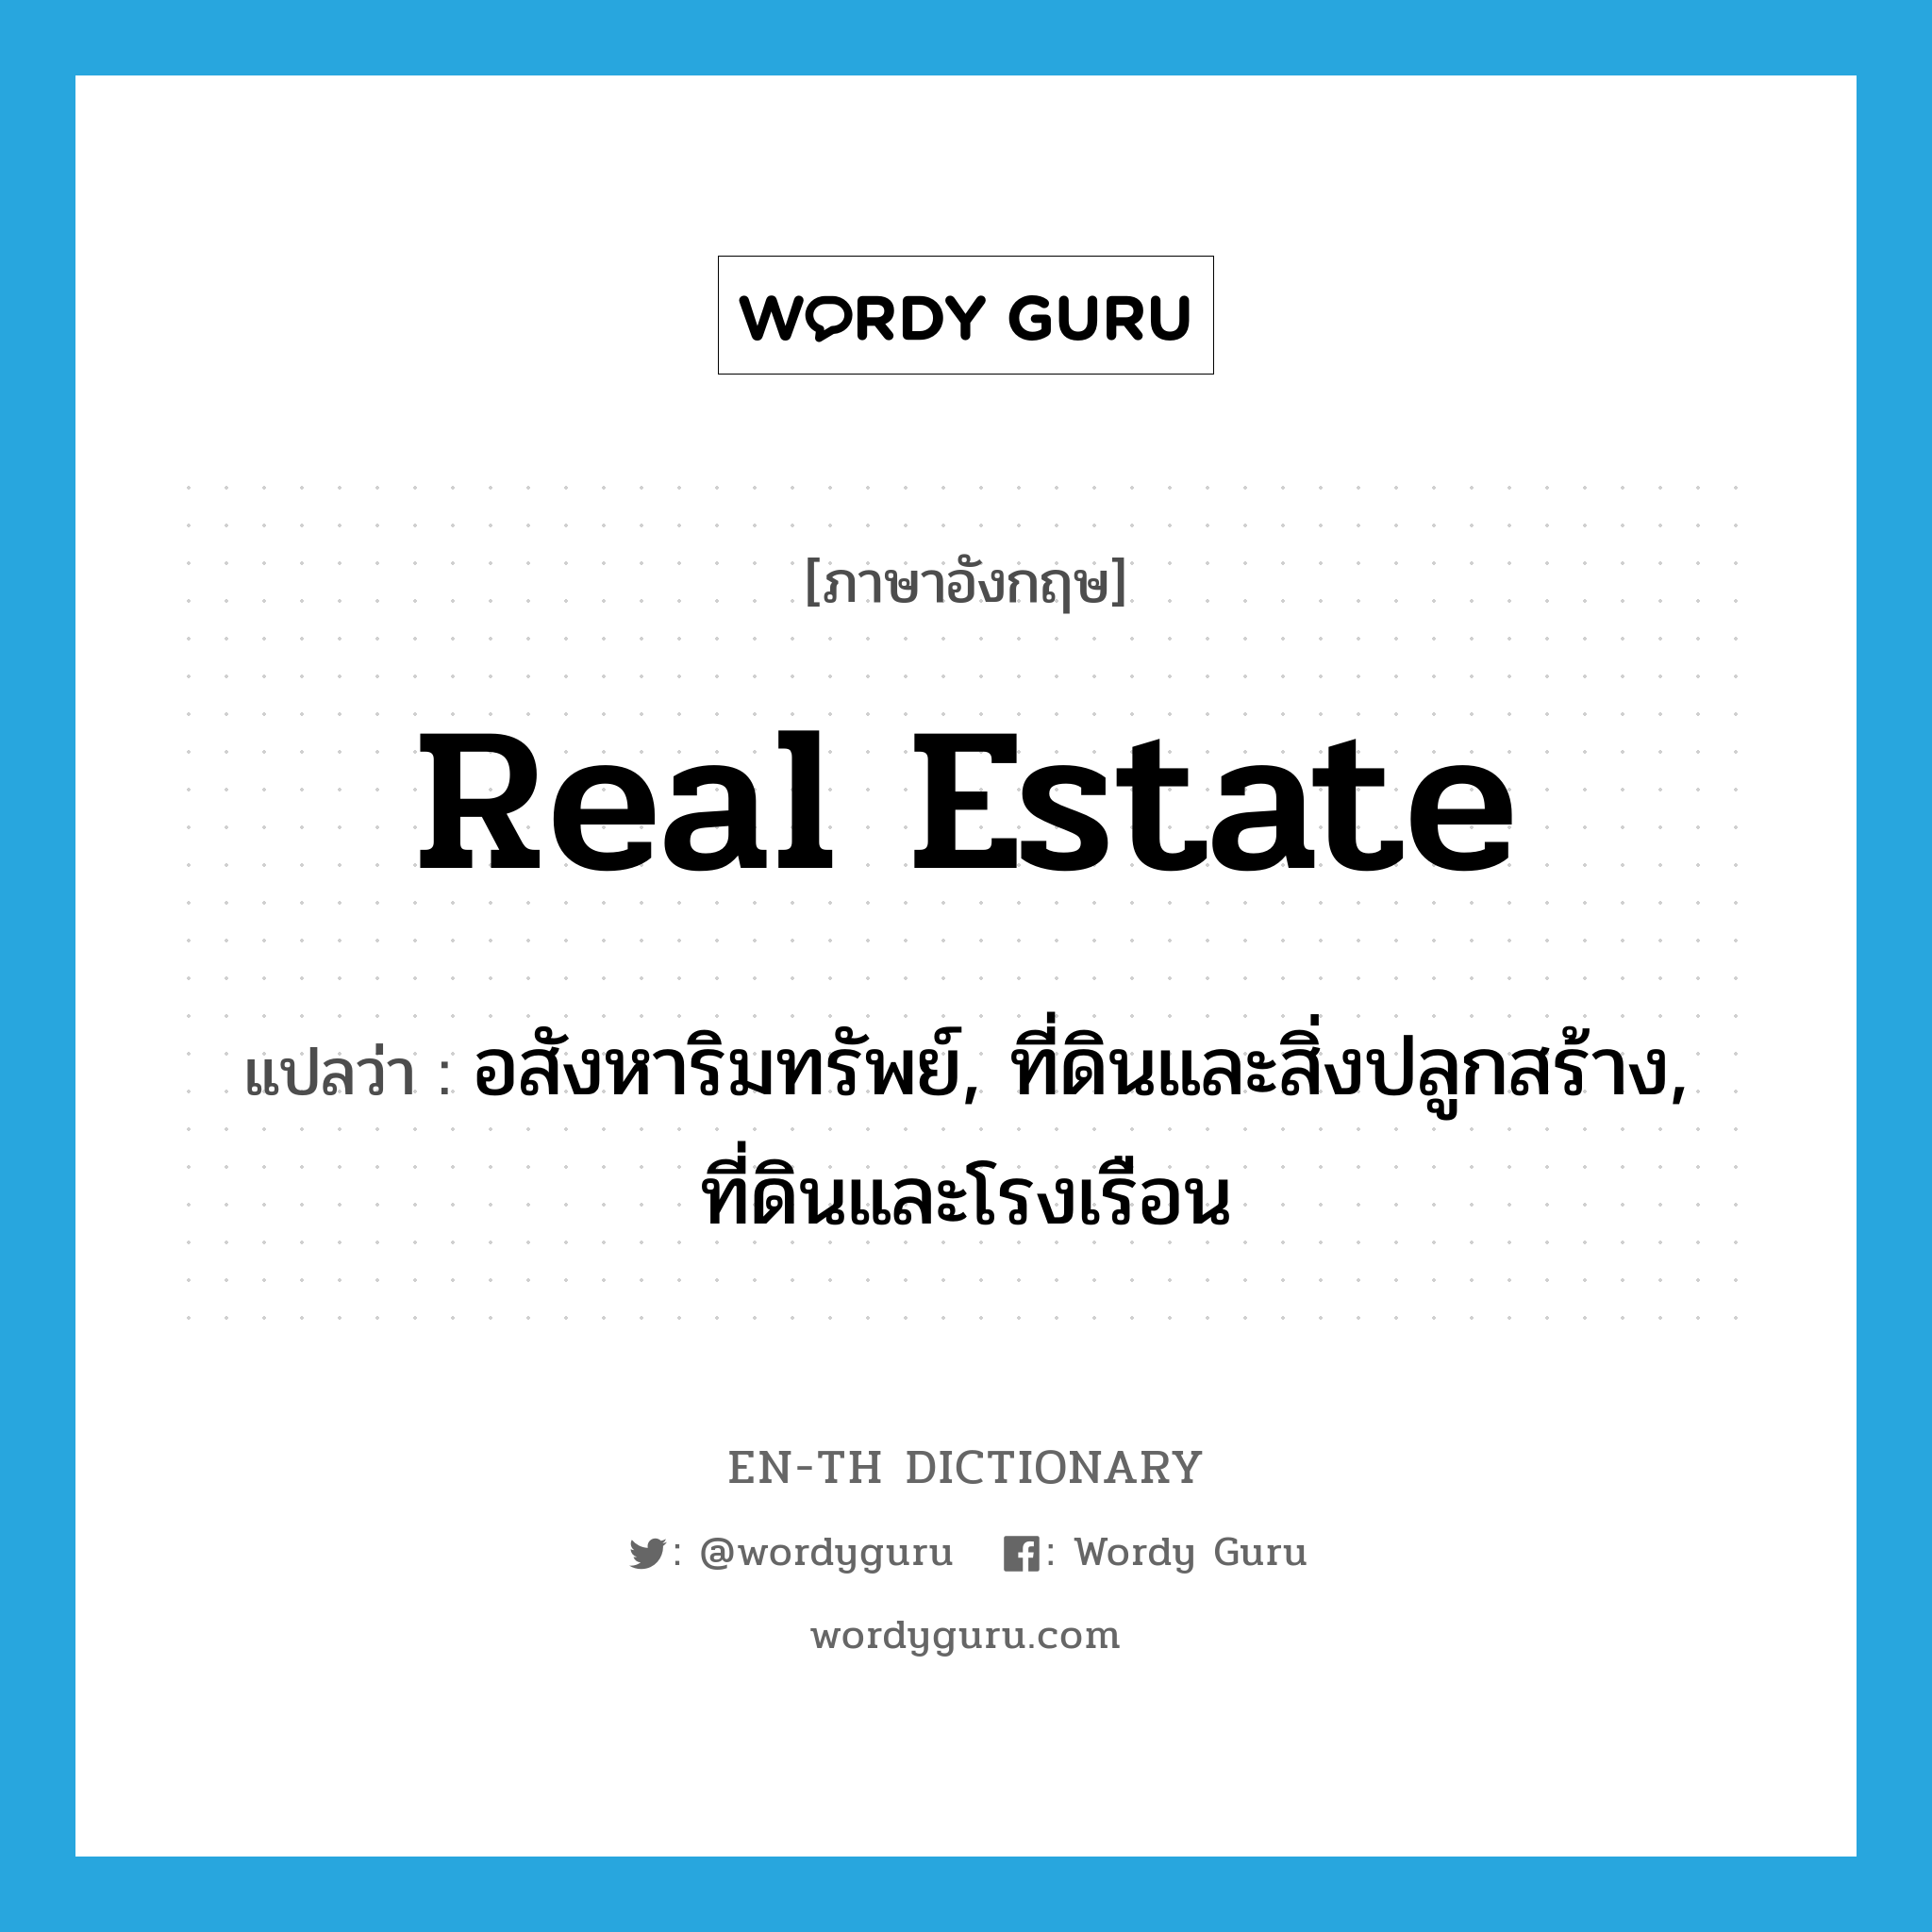 real estate แปลว่า?, คำศัพท์ภาษาอังกฤษ real estate แปลว่า อสังหาริมทรัพย์, ที่ดินและสิ่งปลูกสร้าง, ที่ดินและโรงเรือน ประเภท N หมวด N